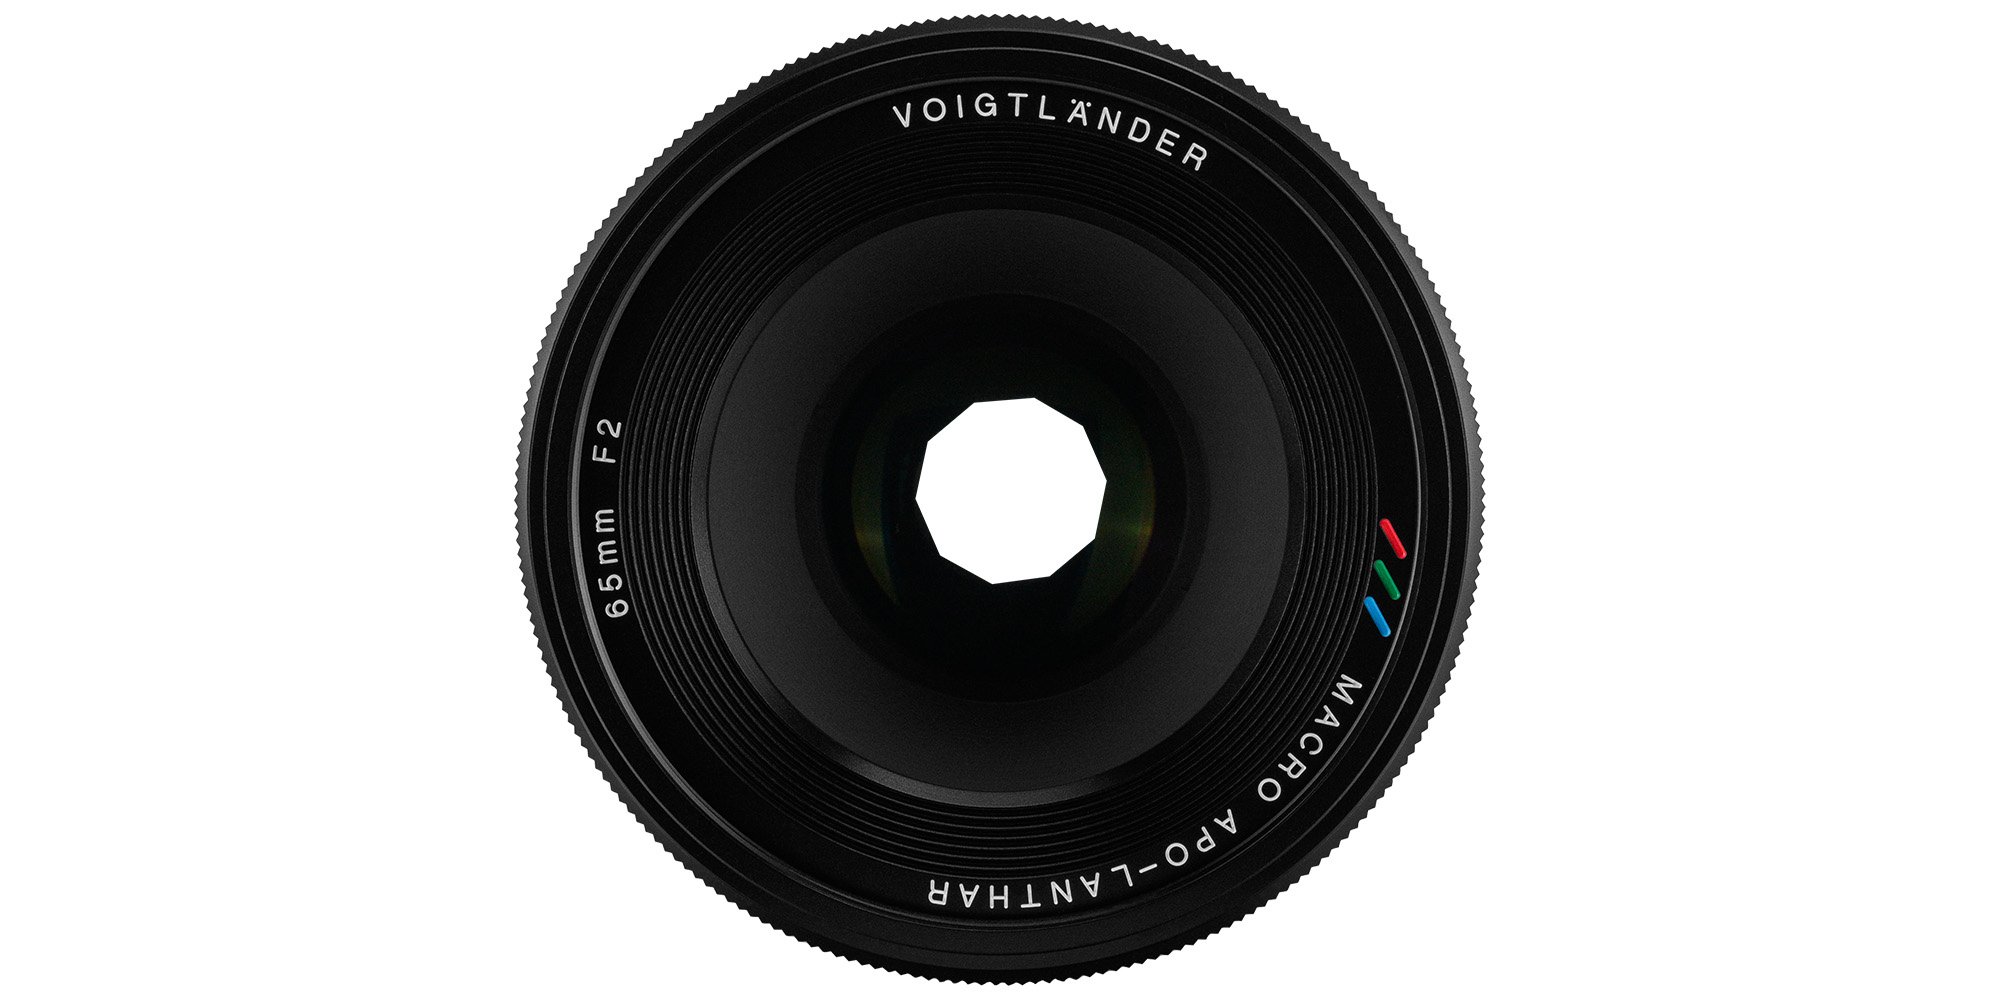 Obiektyw Voigtlander Macro APO Lanthar 65 mm f/2,0 do Nikon Z - Kontrola nad światłem